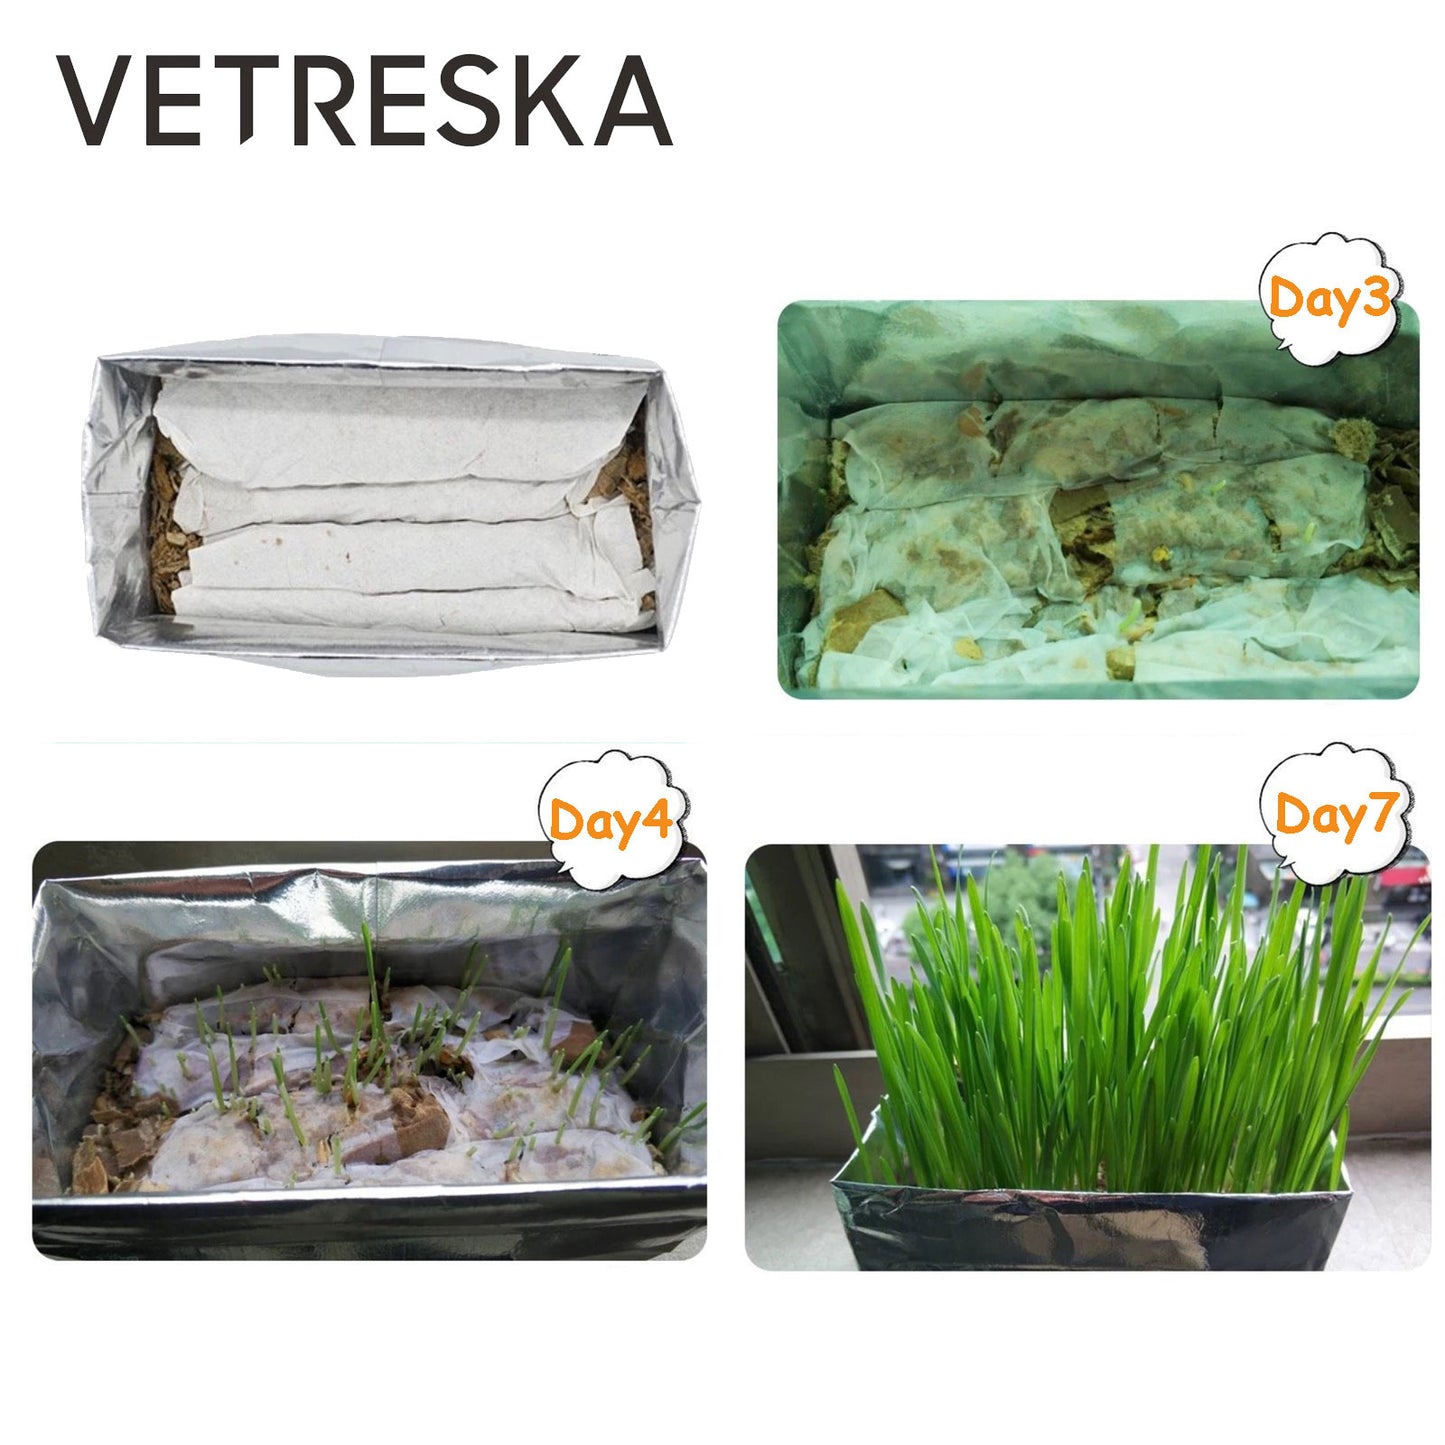 VETRESKA Cat Grass Soilless Seeds